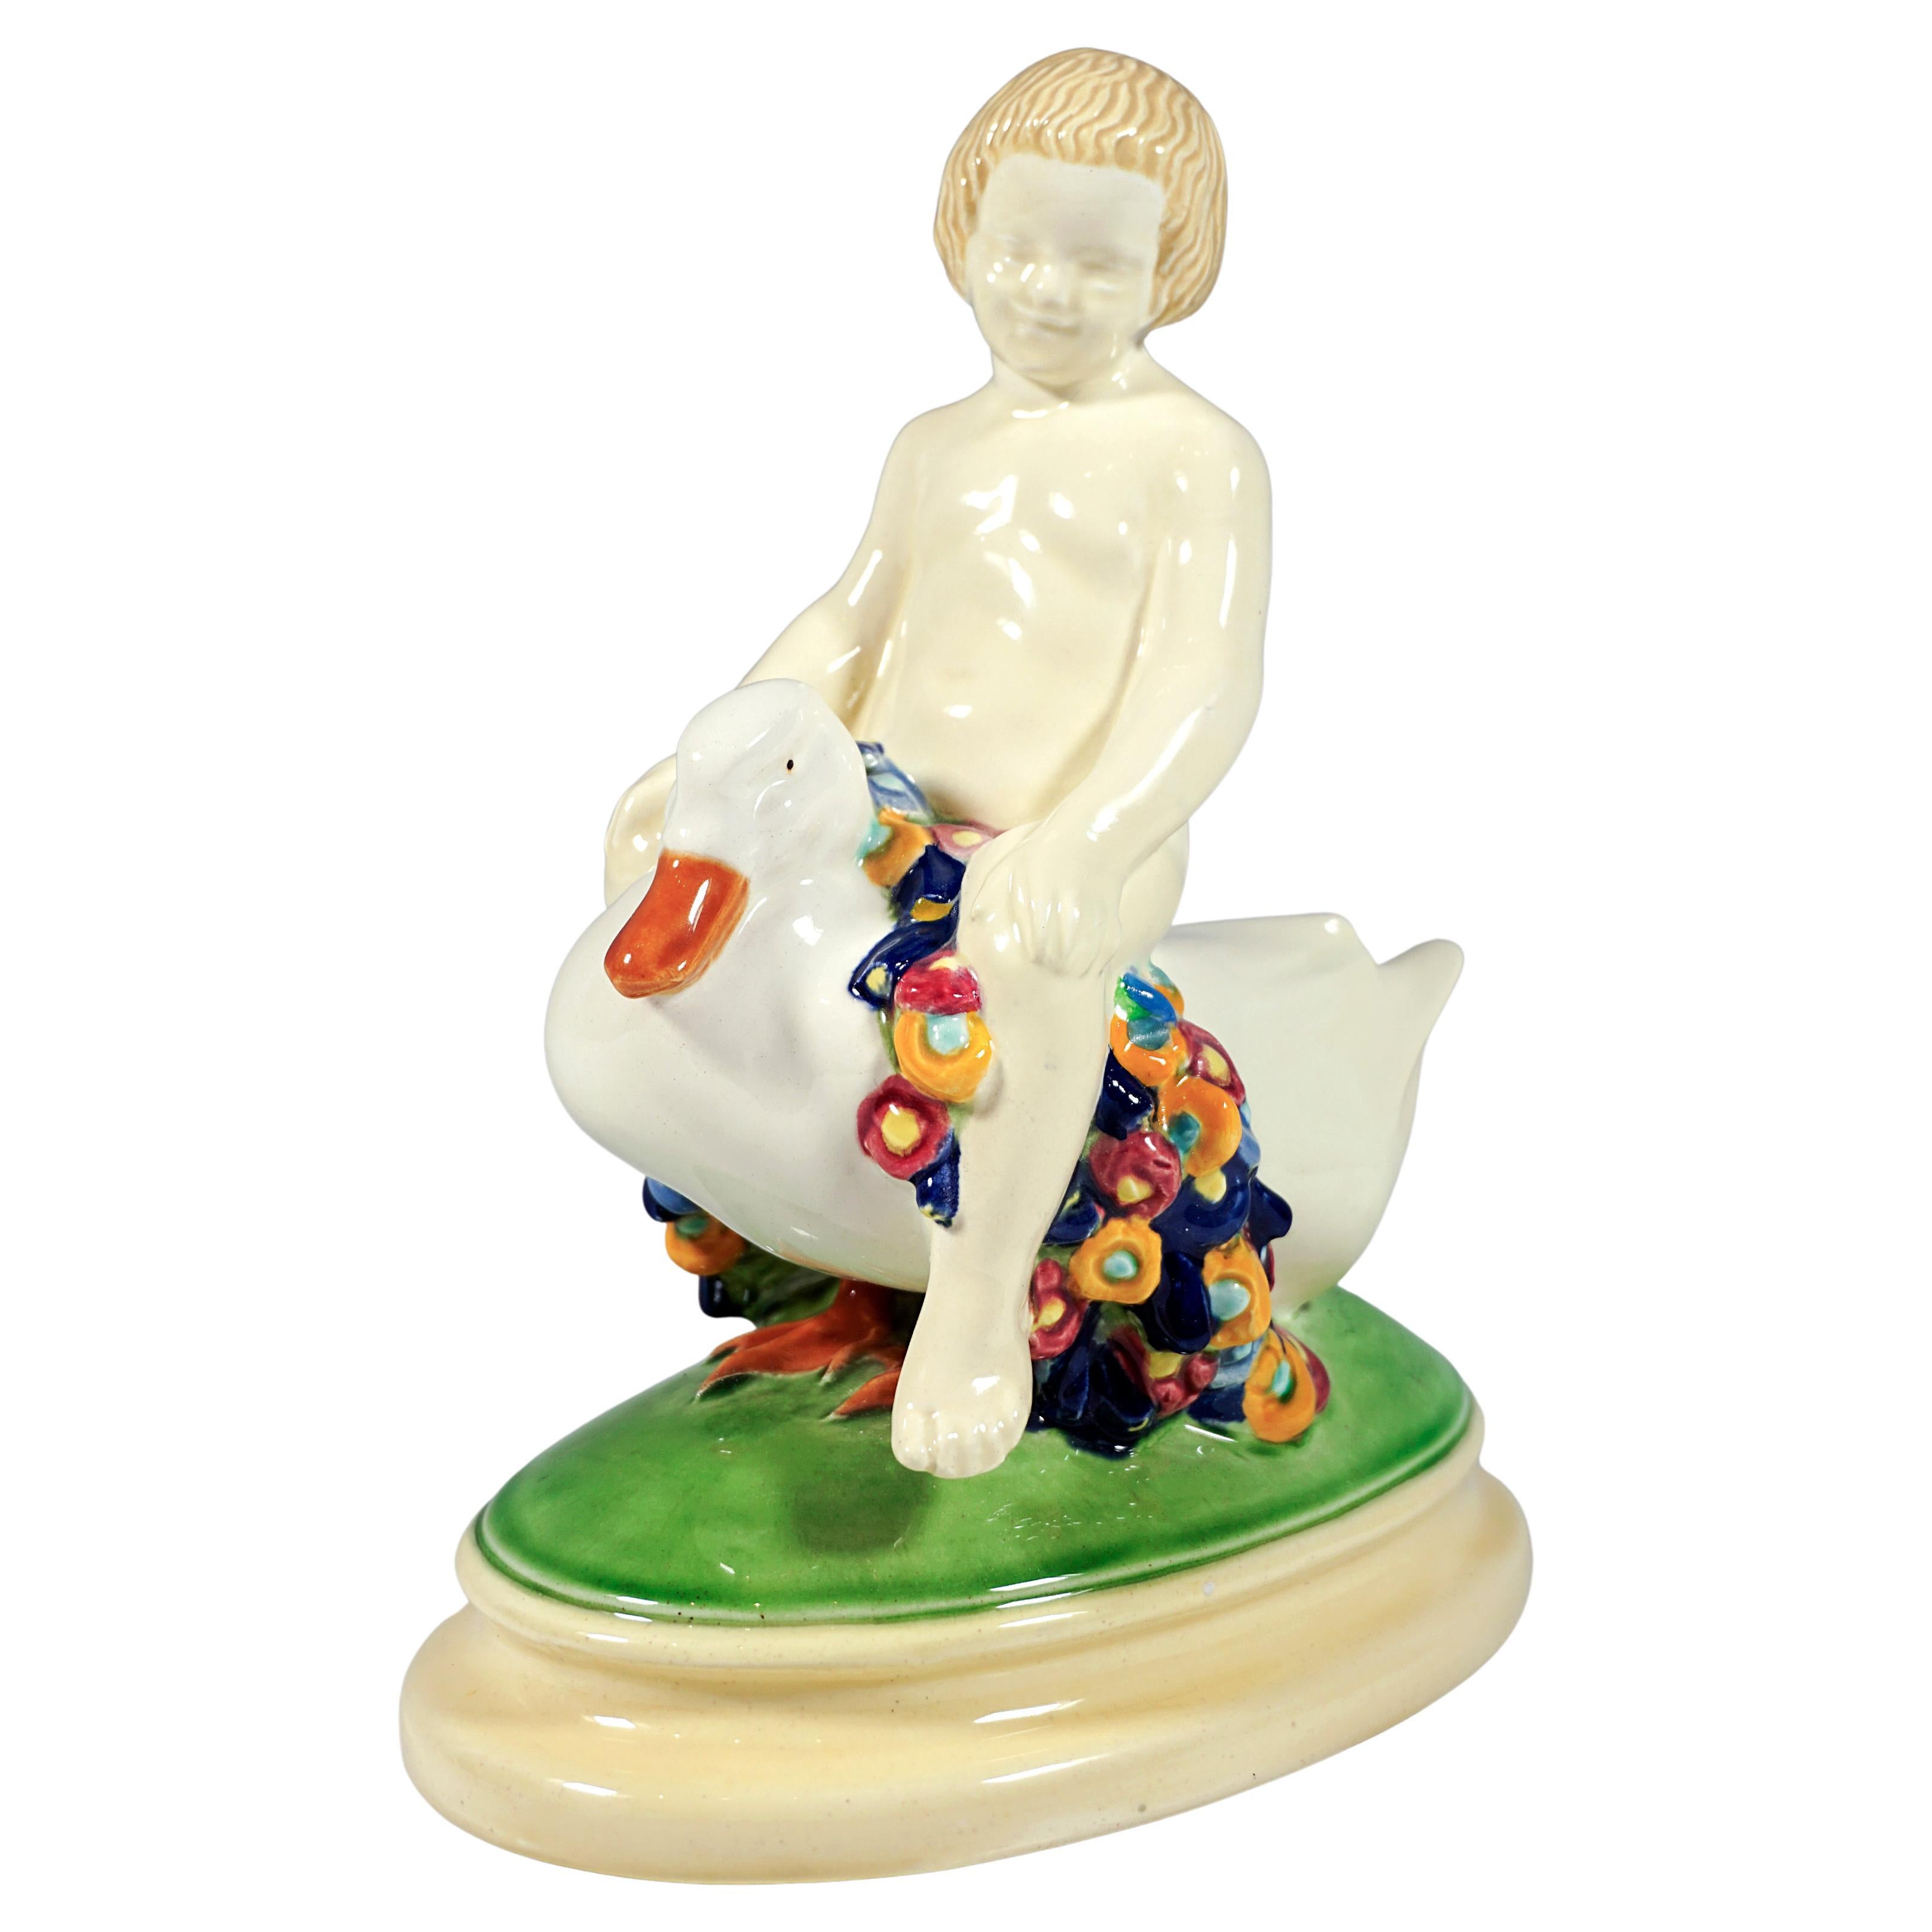 Wiener Jugendstil-Keramik im Wiener Jugendstil, Figur eines Putten, der auf einem Enten reitet, von Doblinger, um 1910